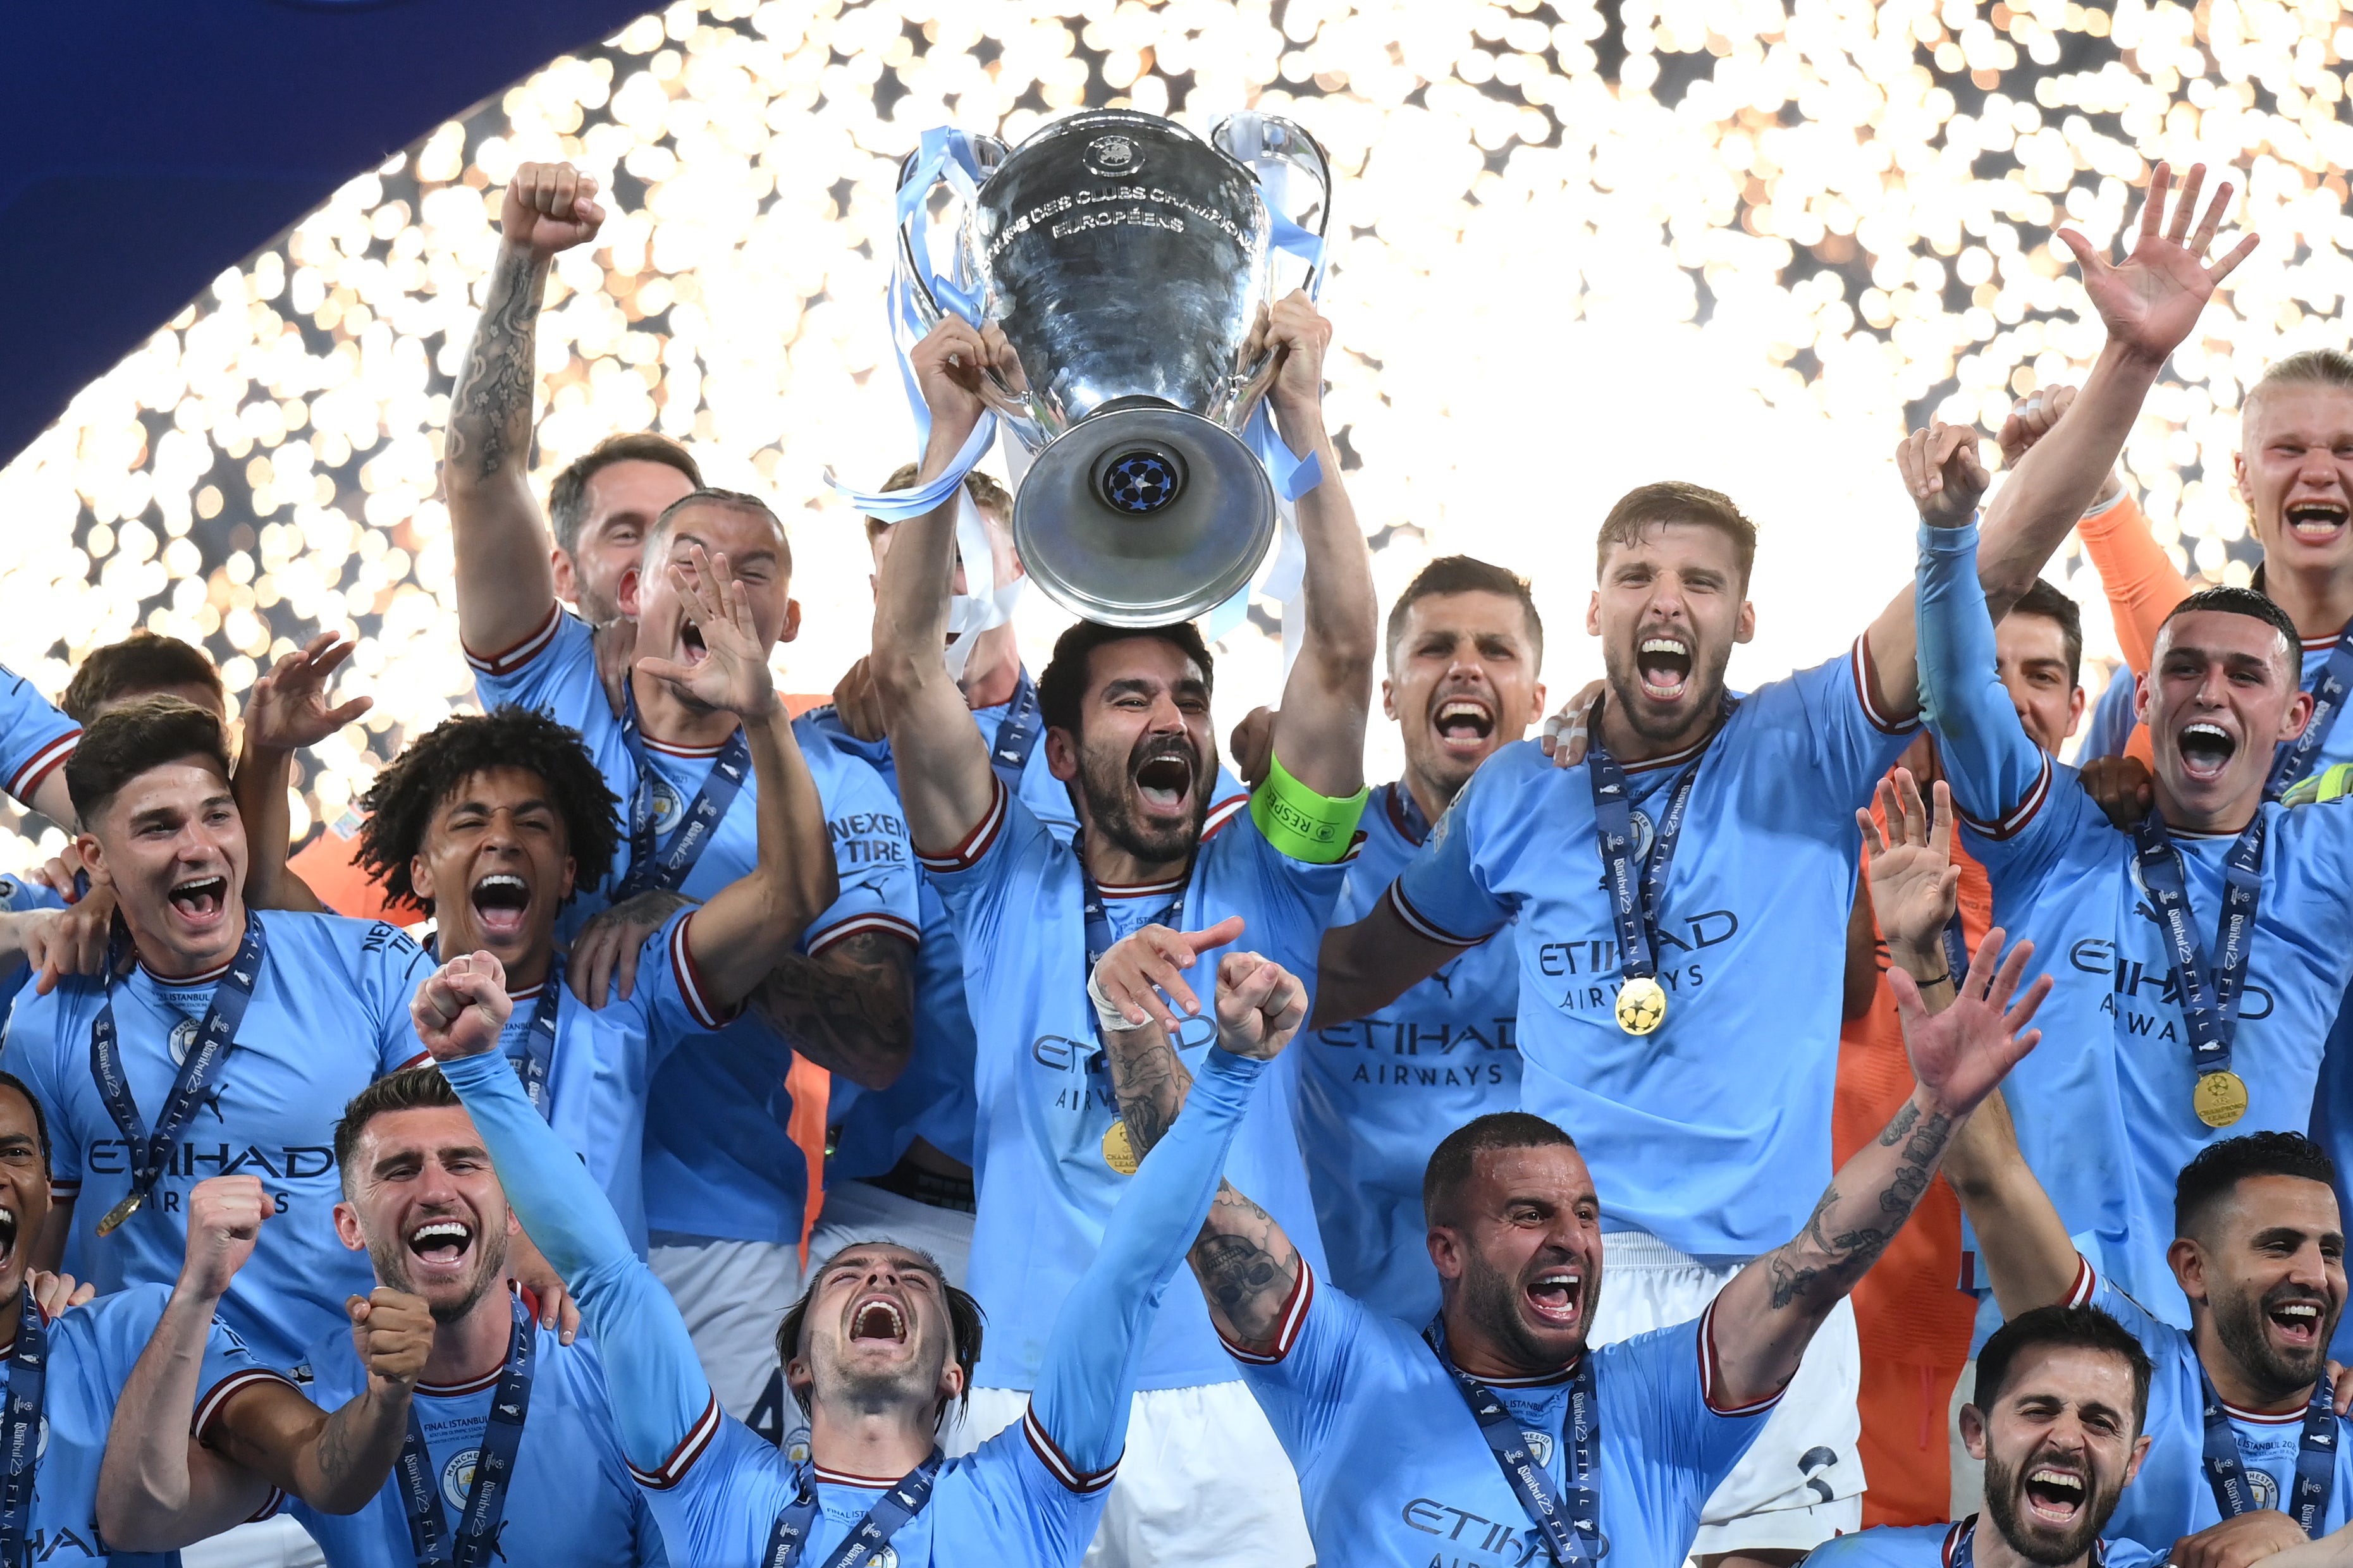 Champions League final 2023: Man City complete historic treble